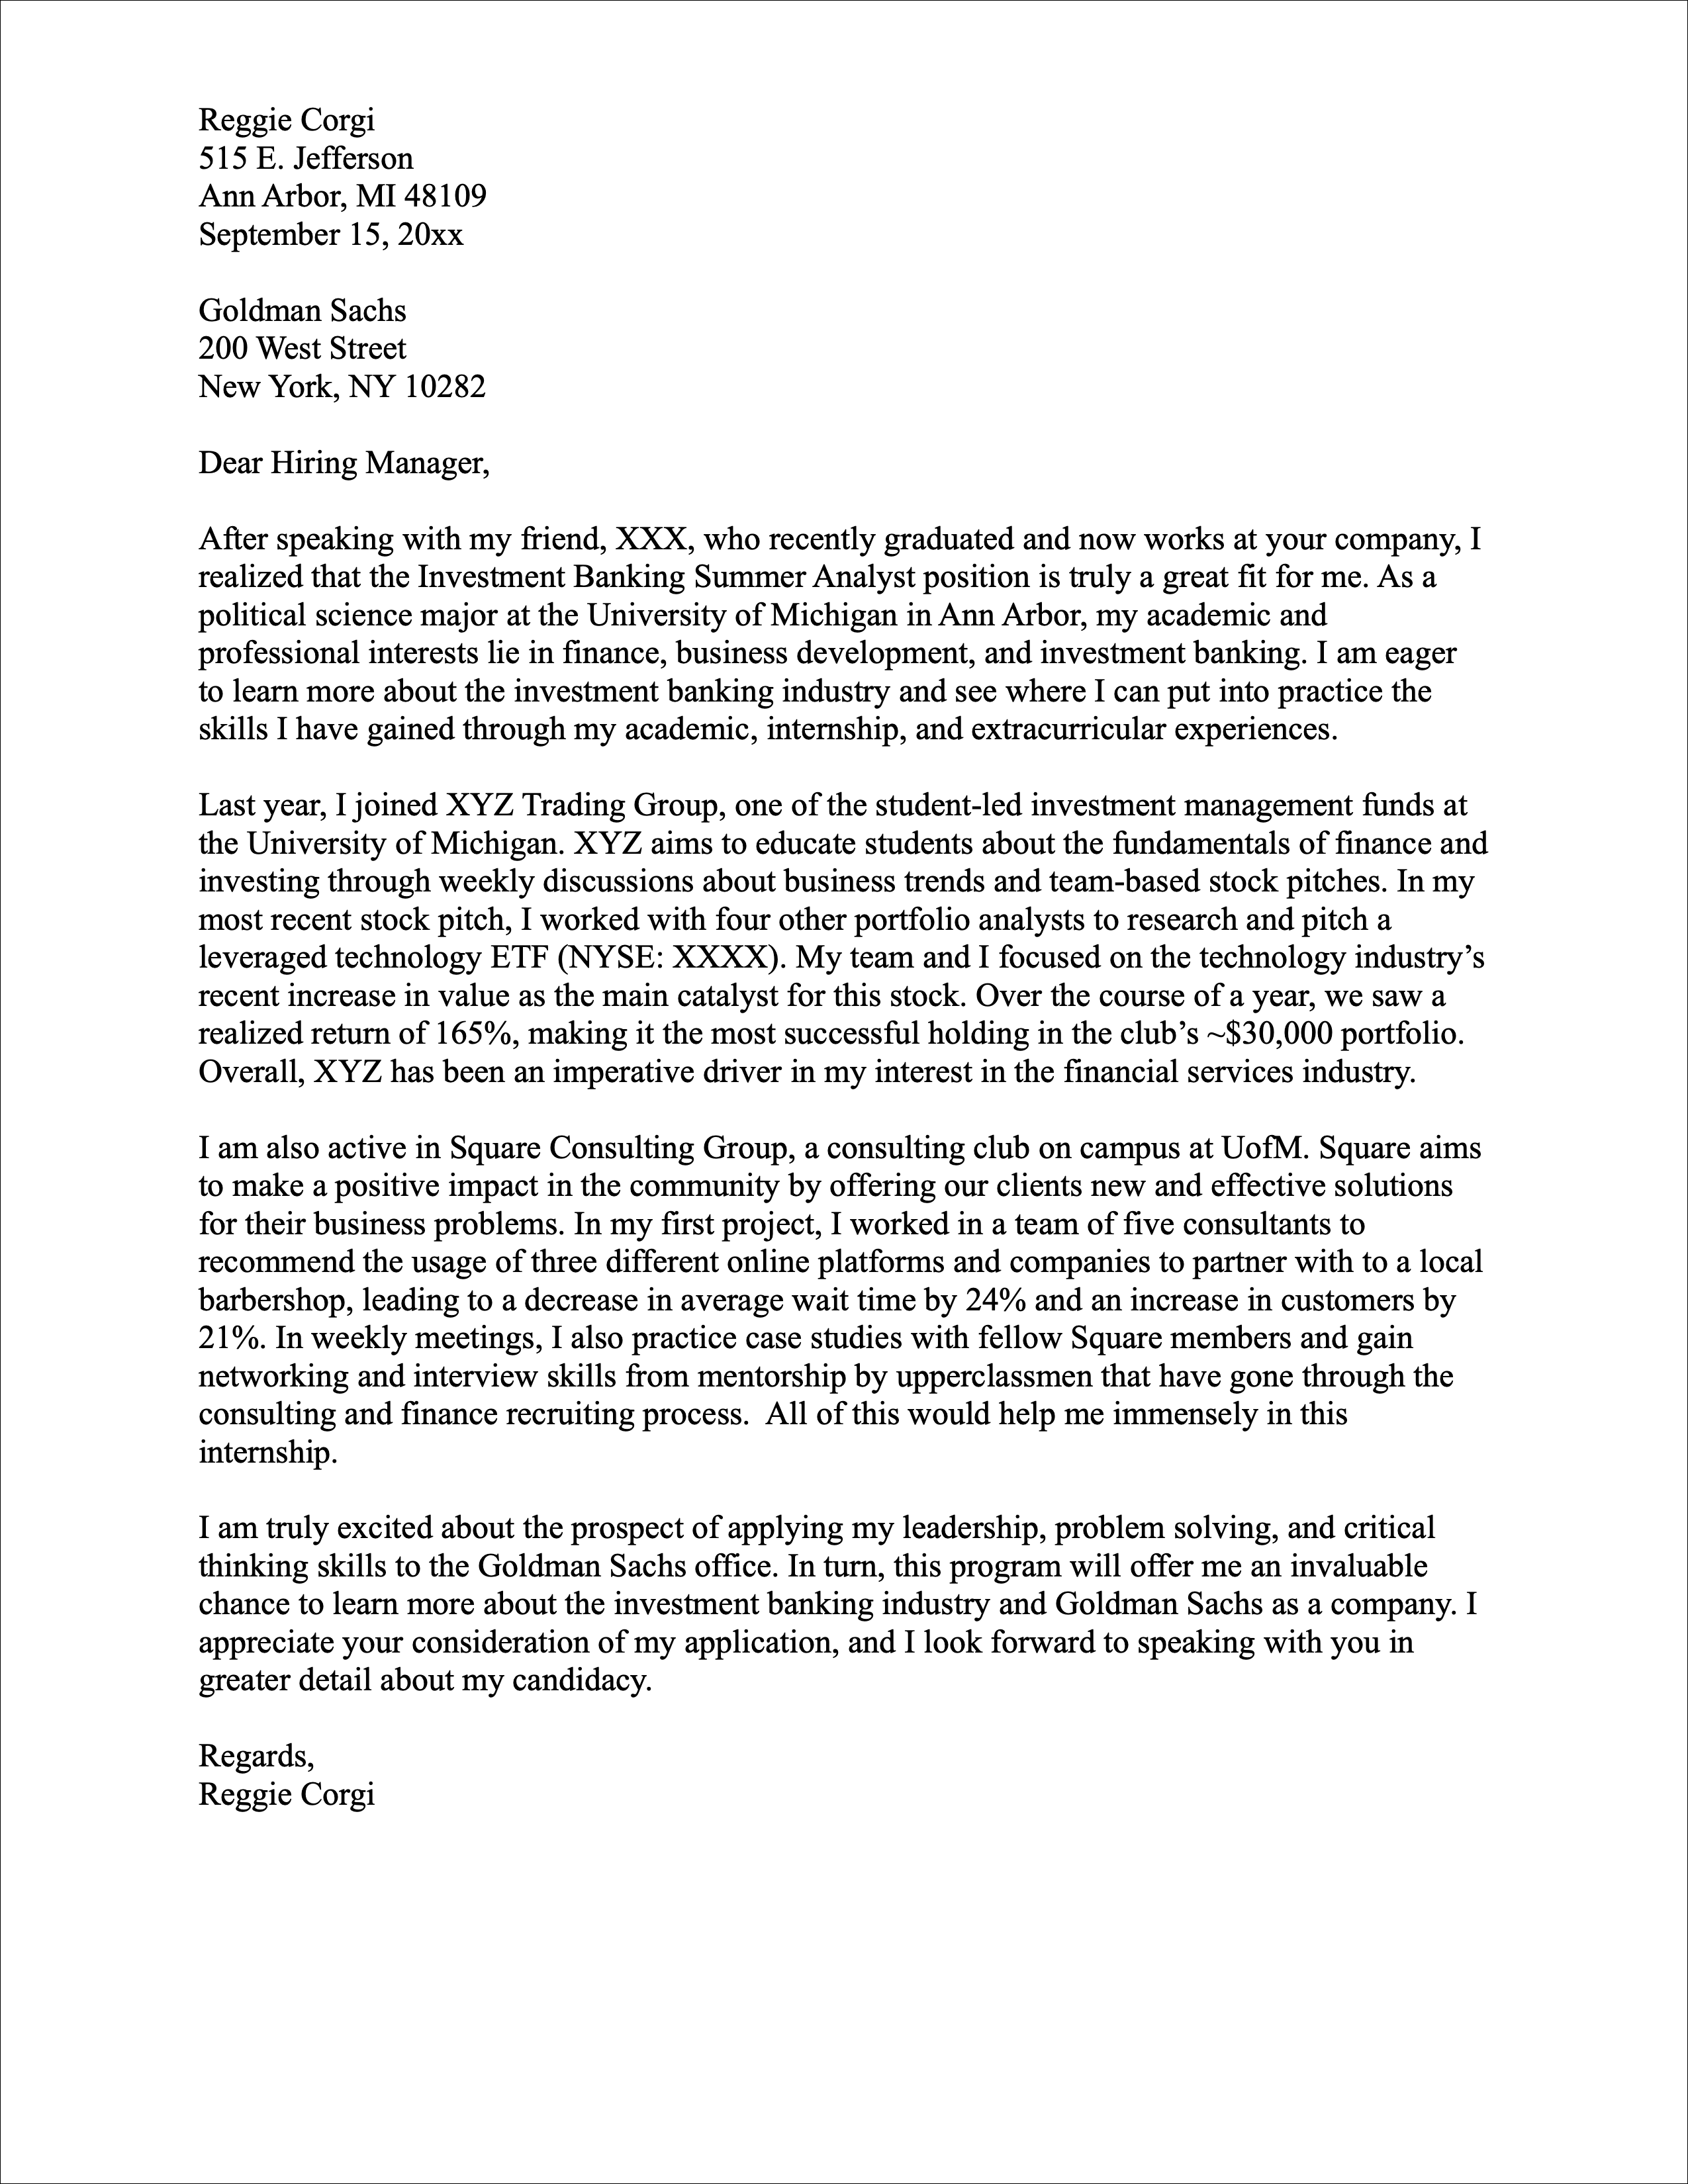 Reggie Corgi Cover Letter Example | University Career Center